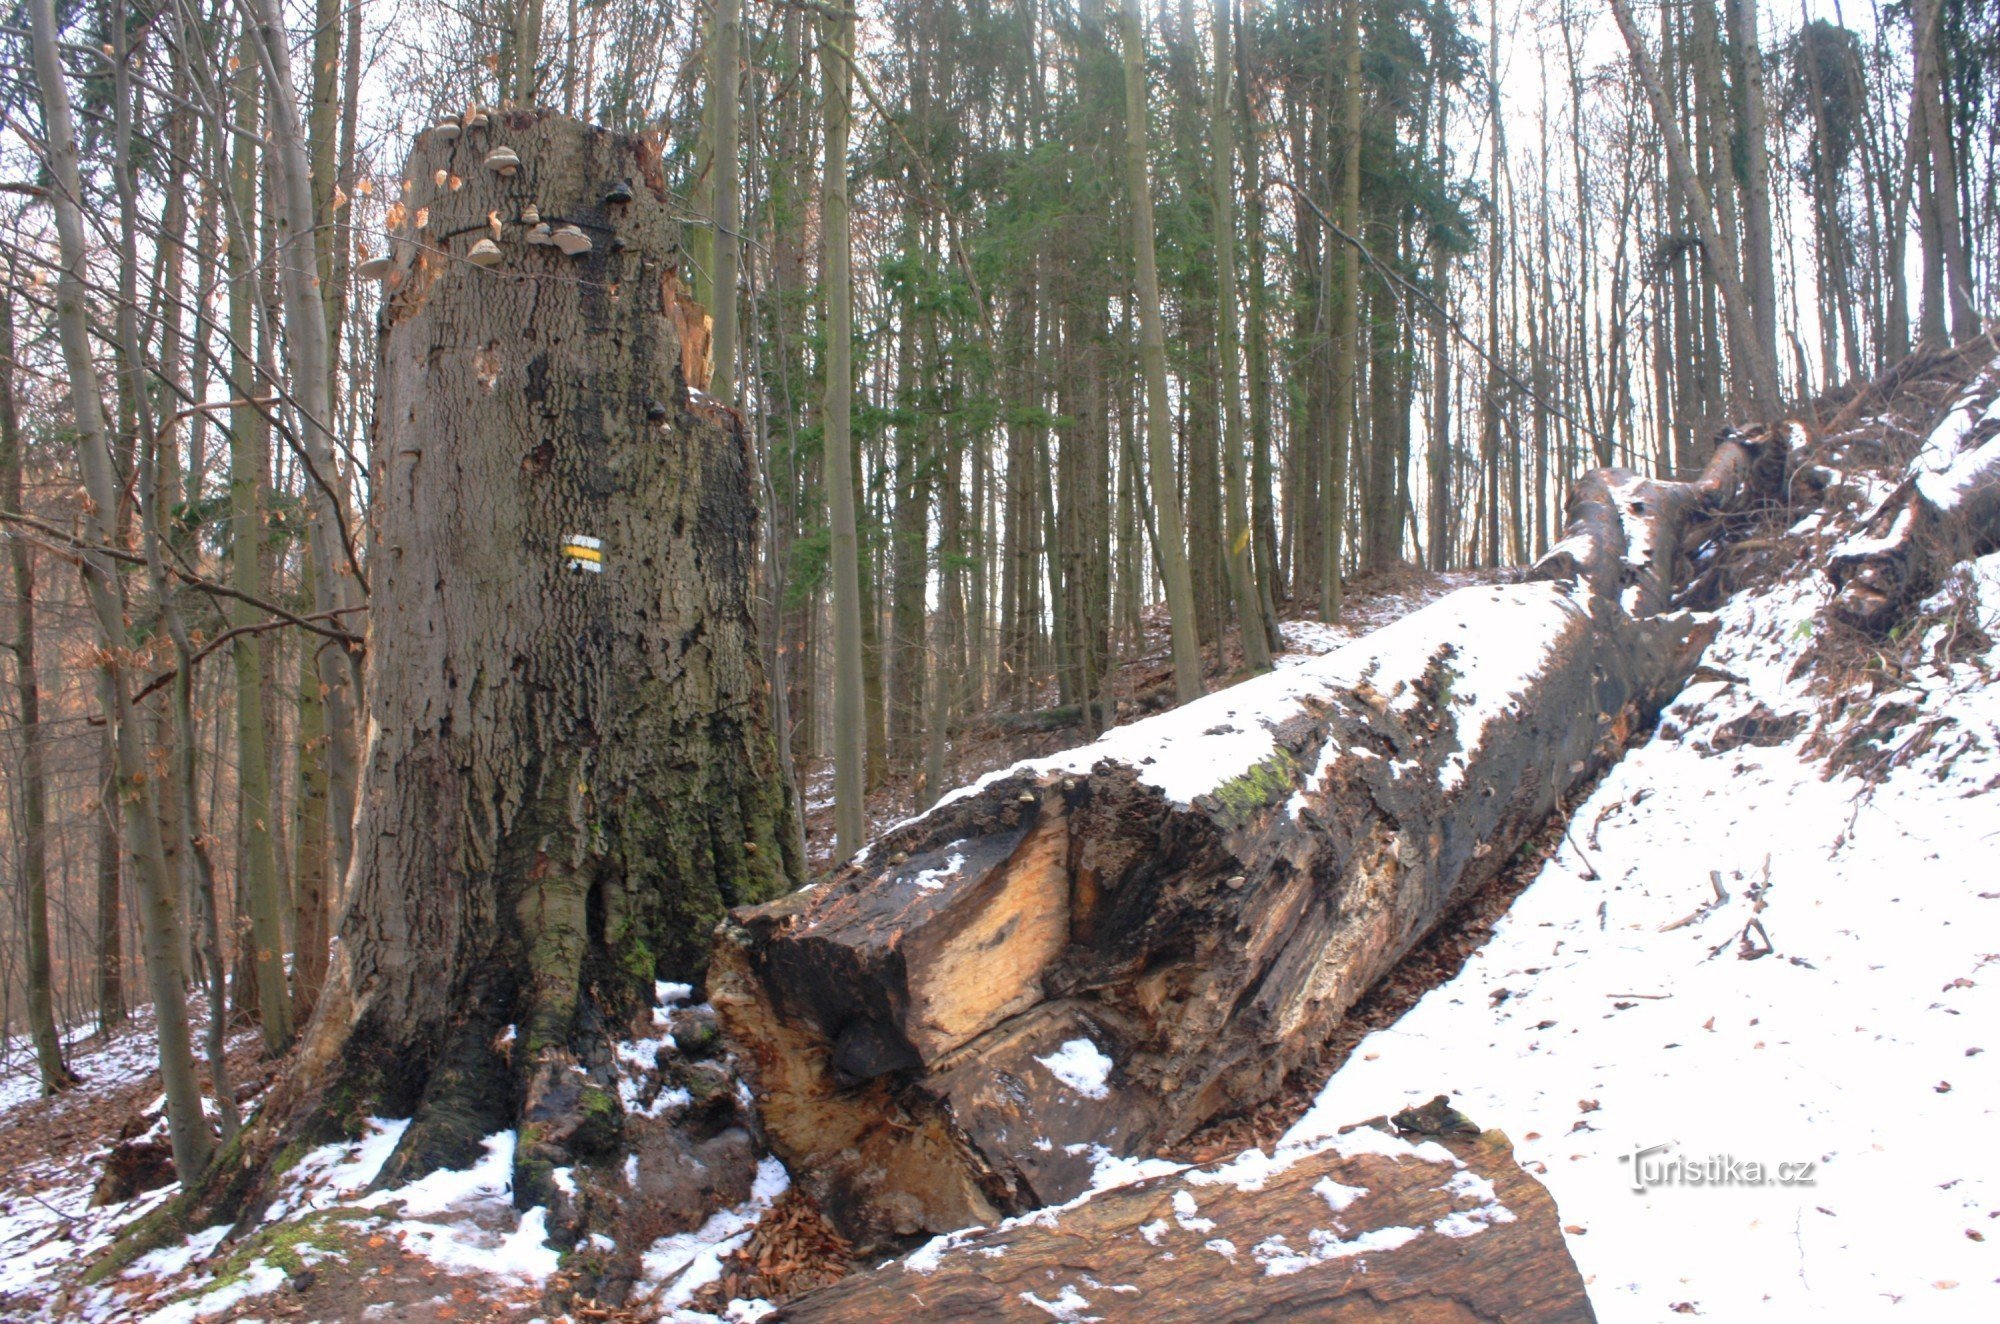 Thân cây sồi trên đường vào lâu đài Ronovu